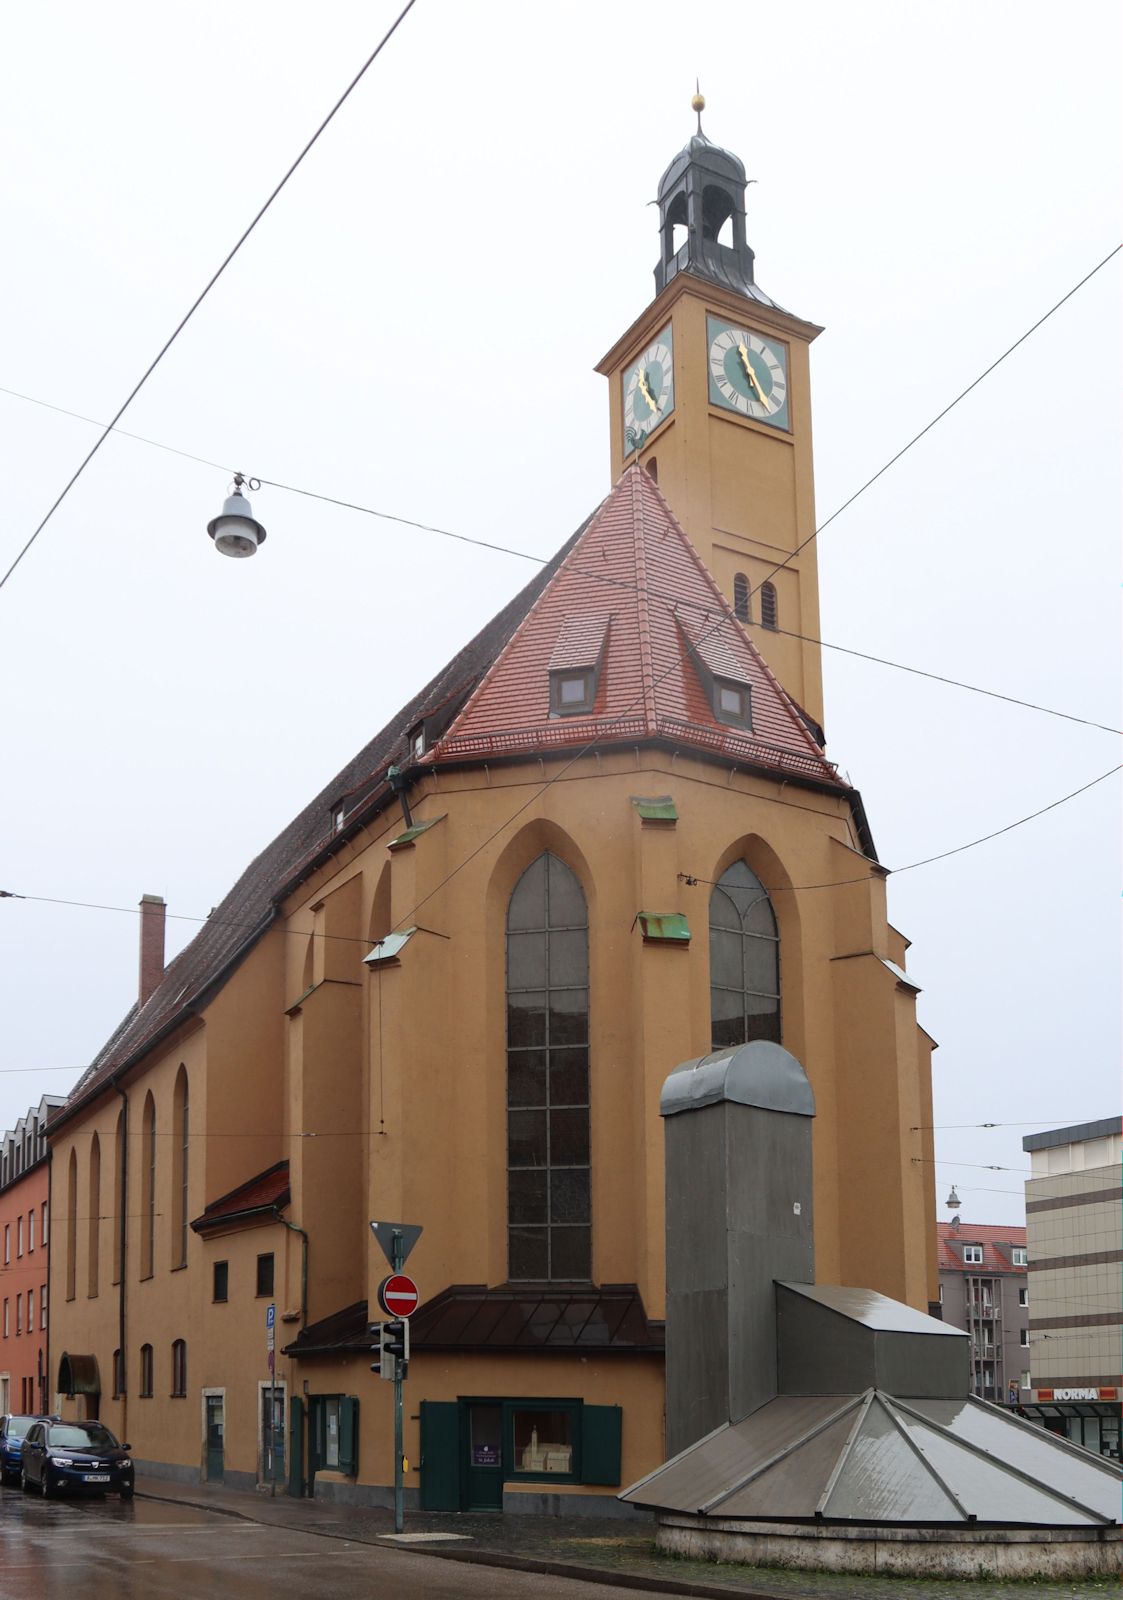 Kirche St. Jakob, in der 1521 der erste evangelische Gottesdienst in Augsburg abgehalten wurde, ab 1633 evangelische Pfarrkirche